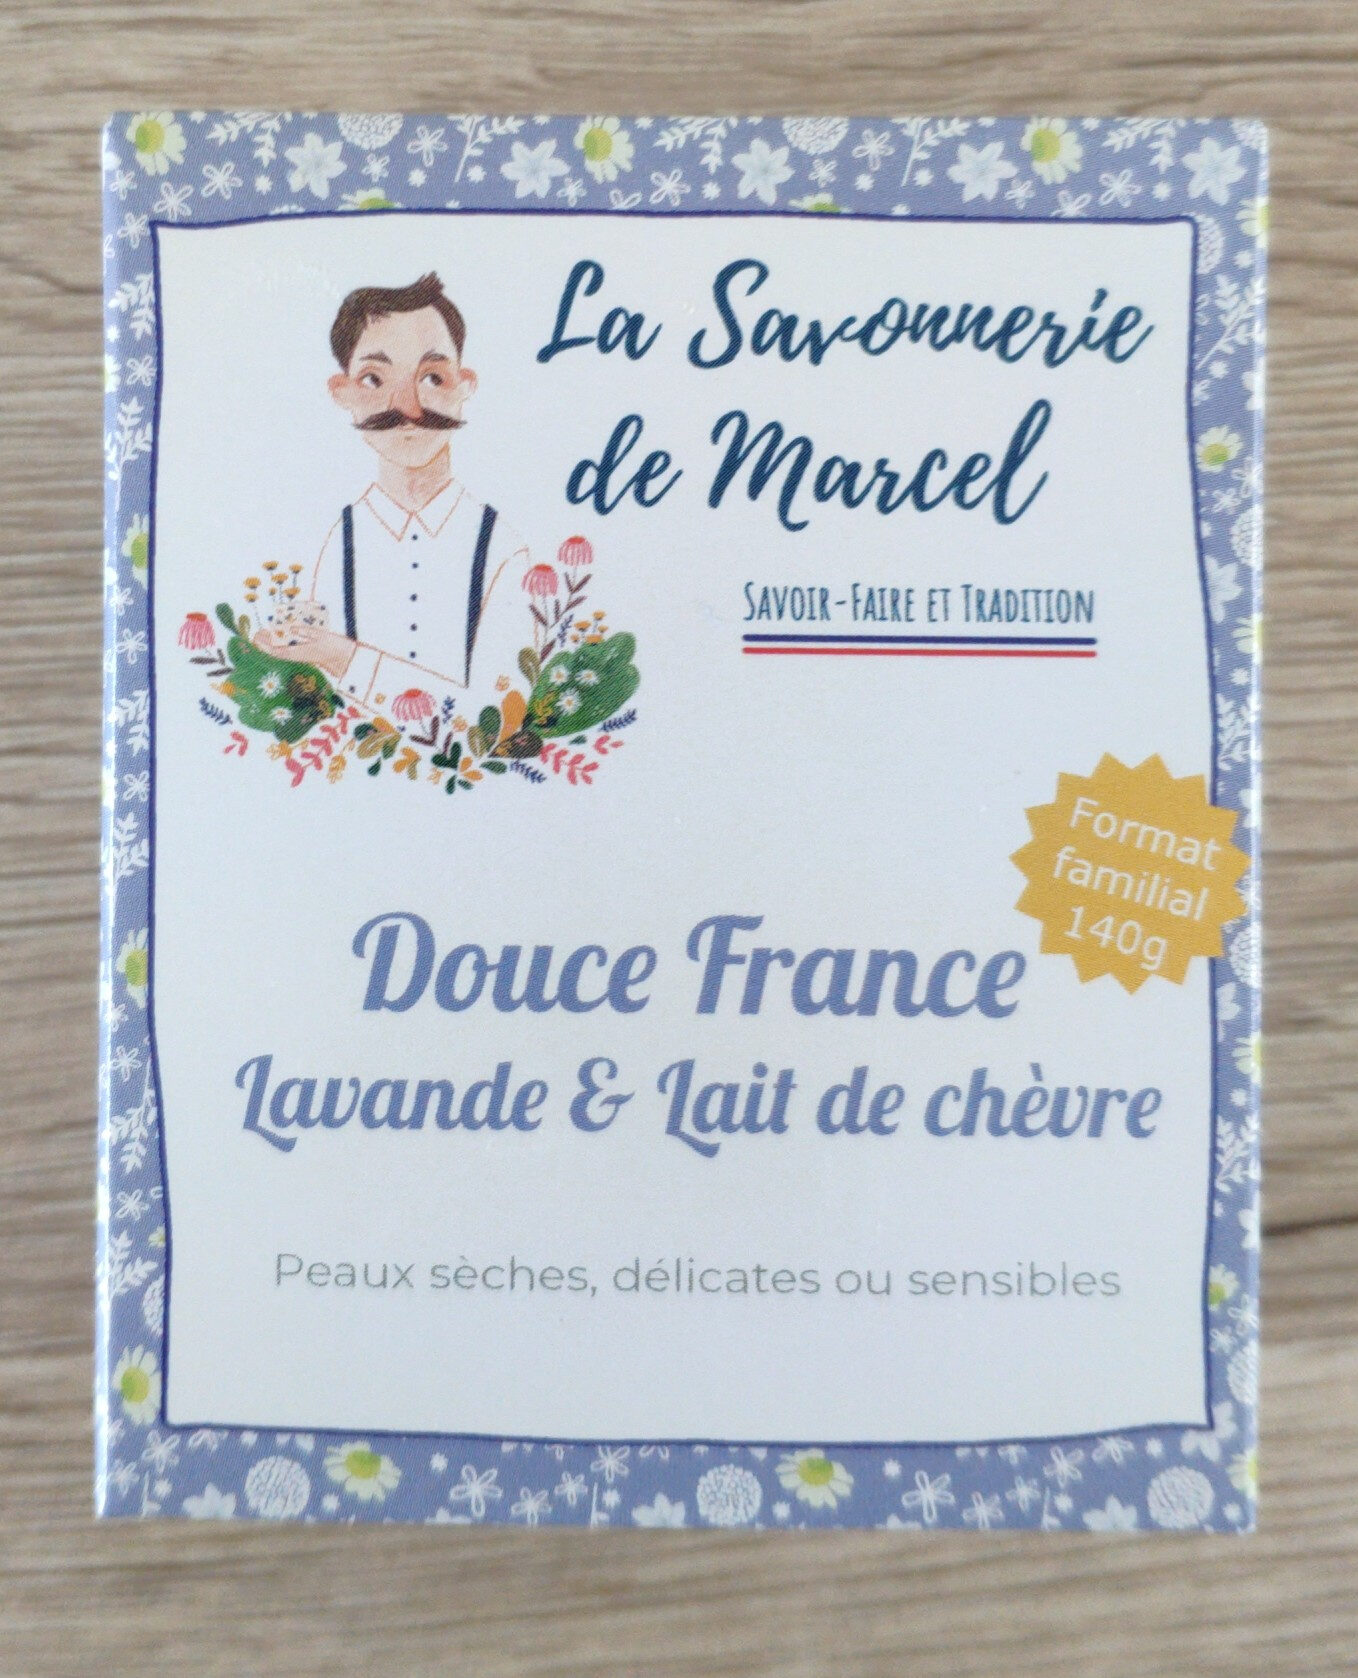 Douce France - Produit - fr